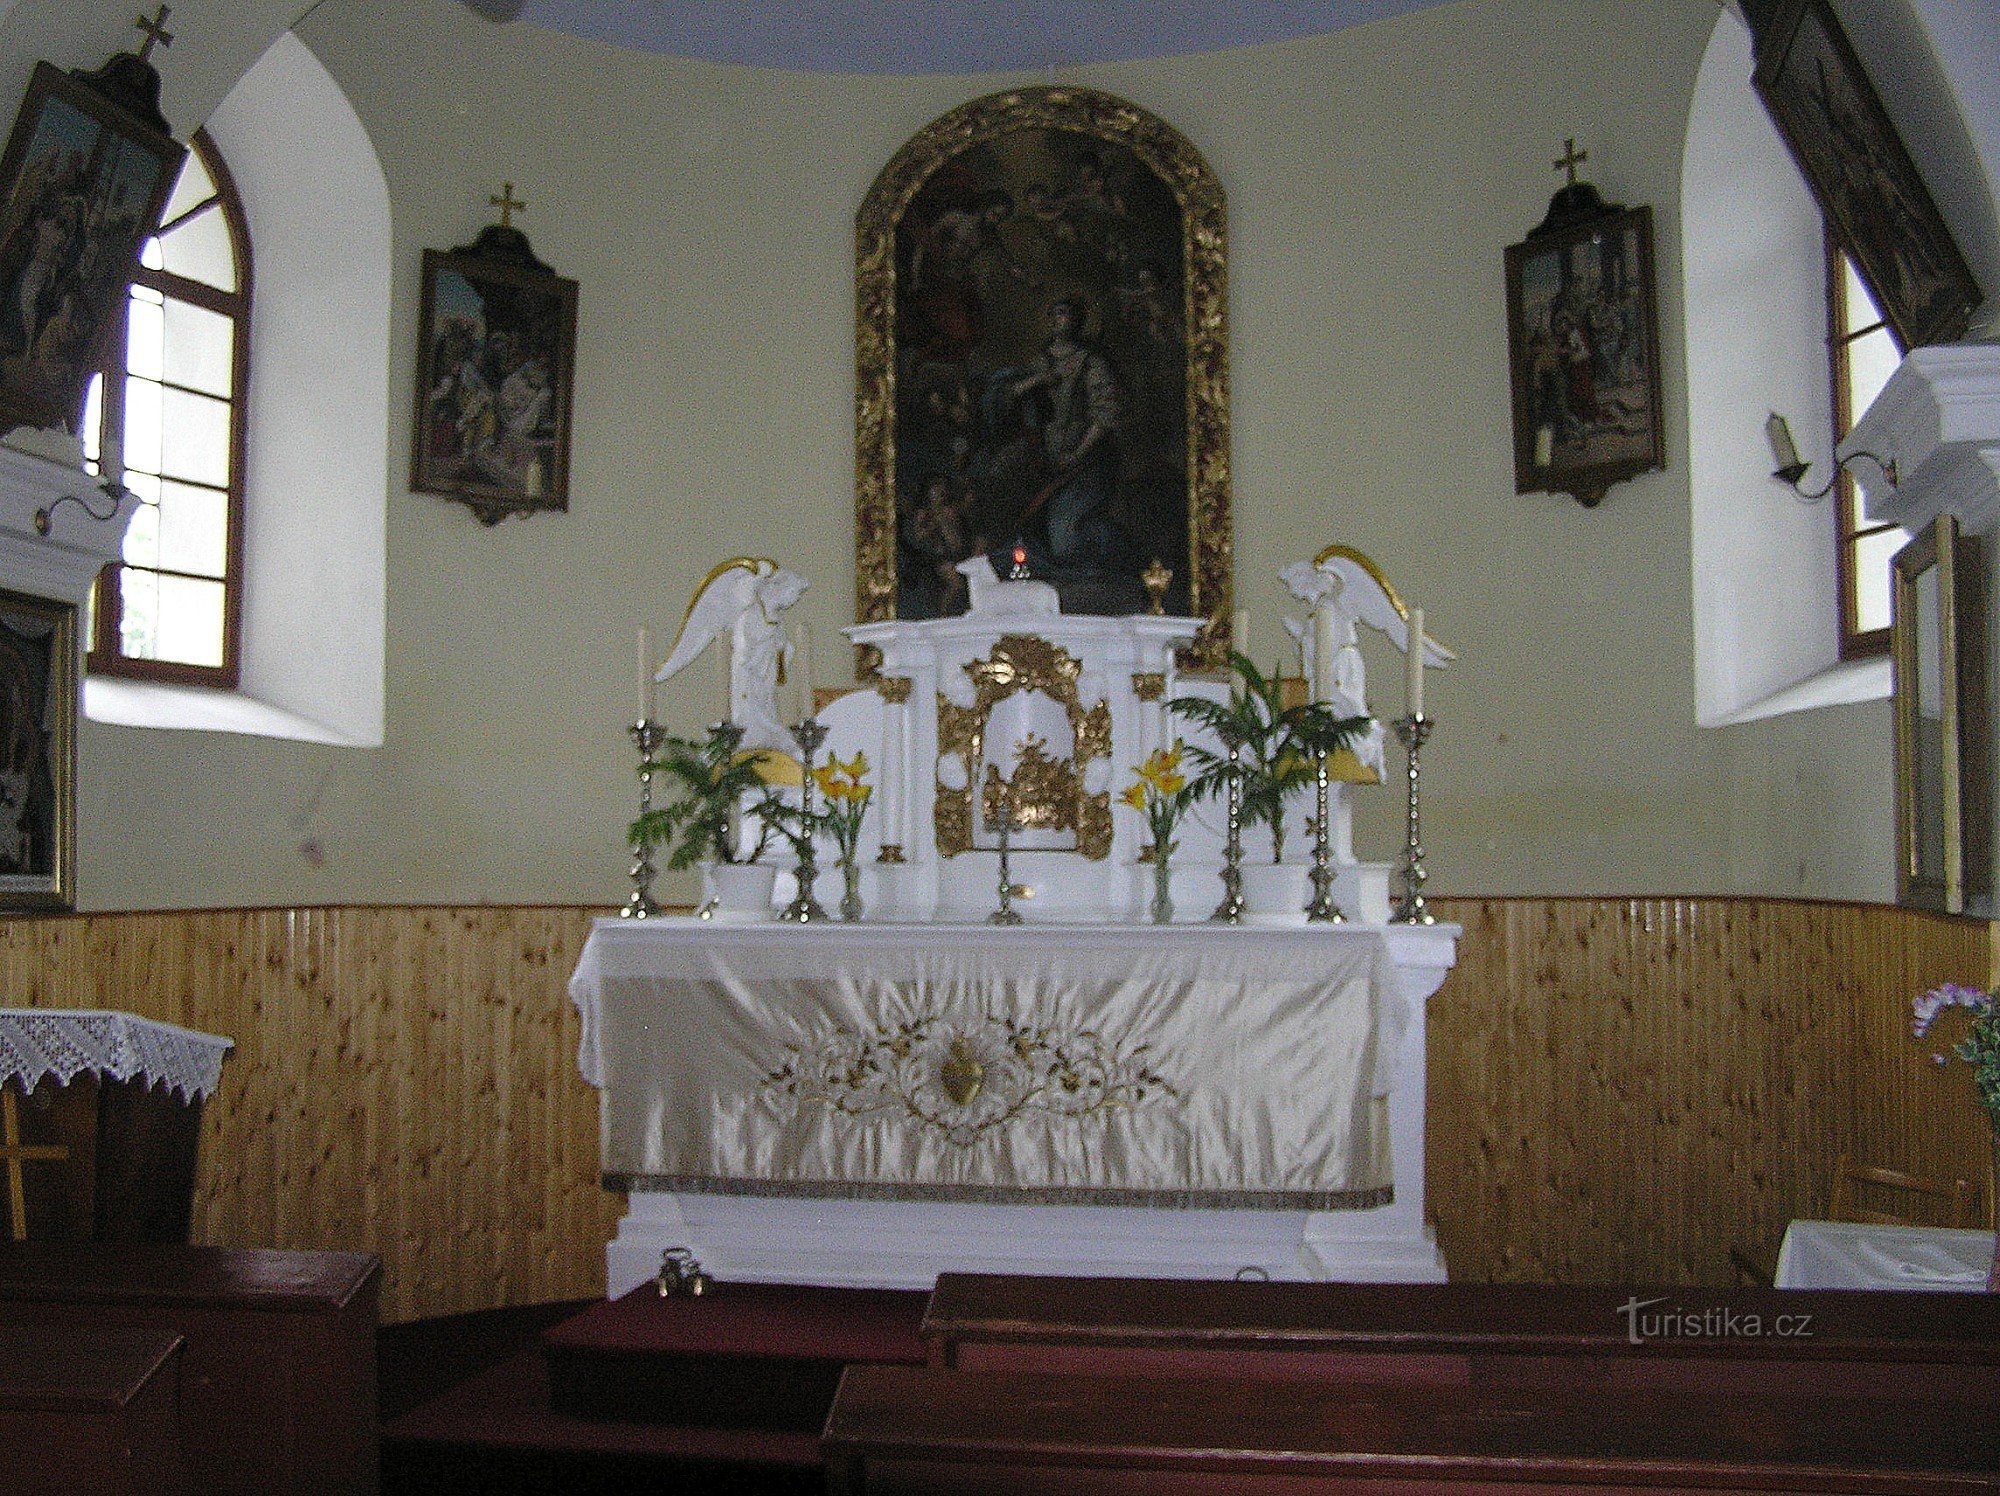 Domoradovice - Capela Sf. Barbory ​​​​- altar